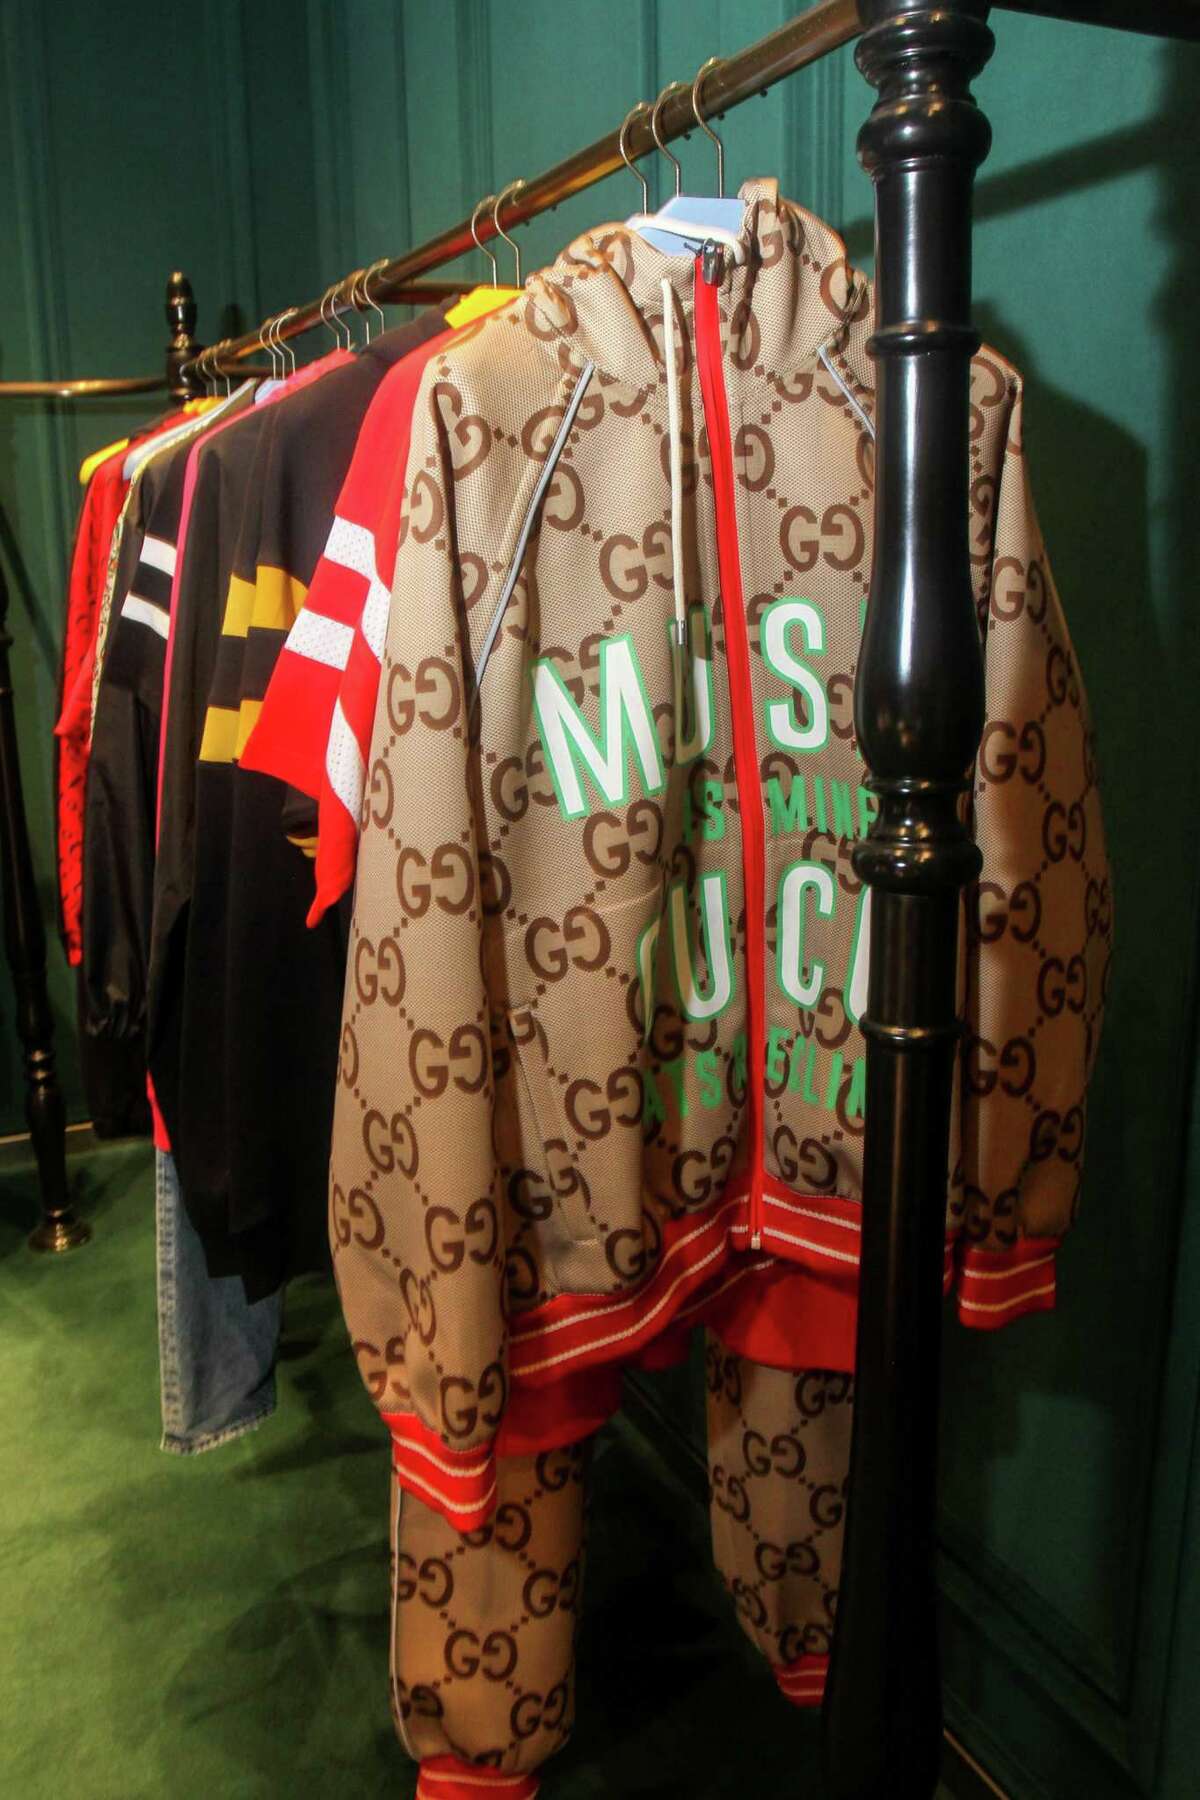 Lav en seng tykkelse Blive opmærksom First look: Inside Gucci's exclusive product drop at Houston Galleria